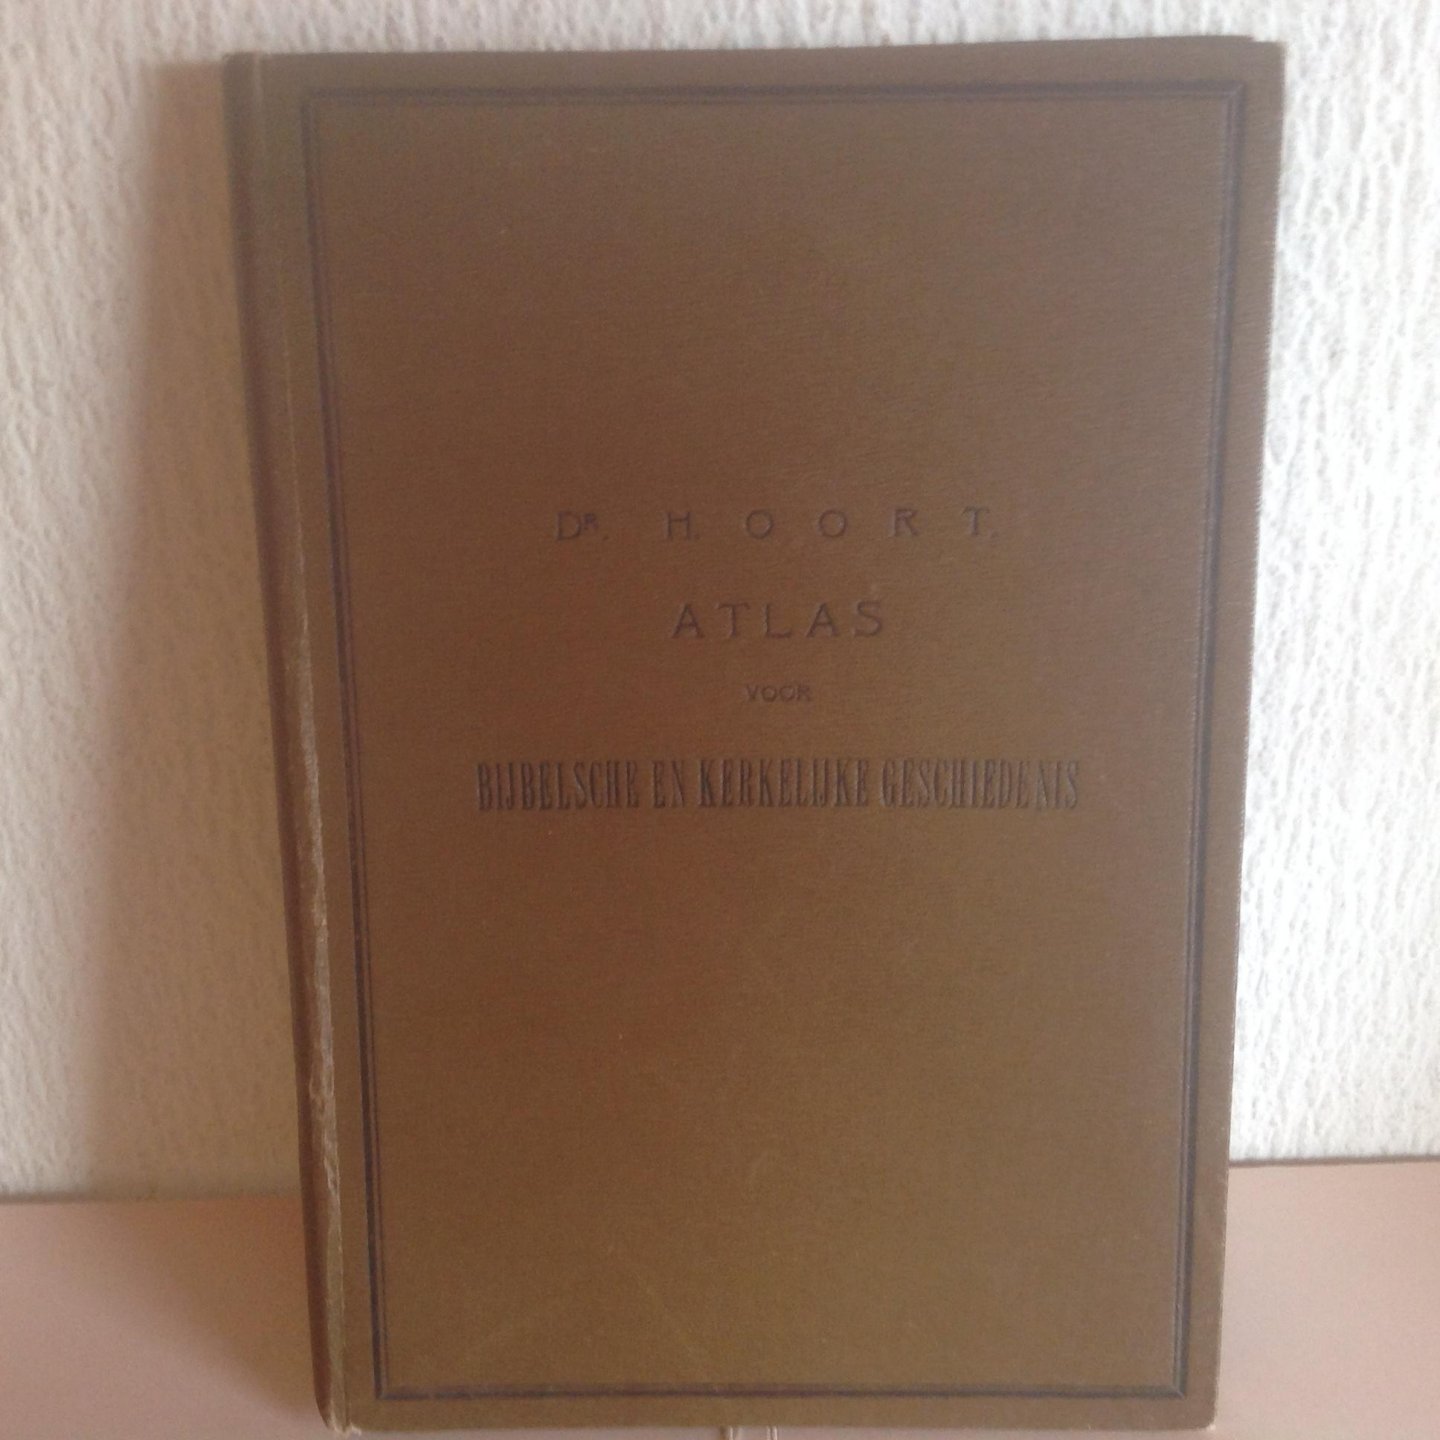 Dr.Hoort - Atlas voor Bijbelsche en Kerkelijke geschiedenis ,1884